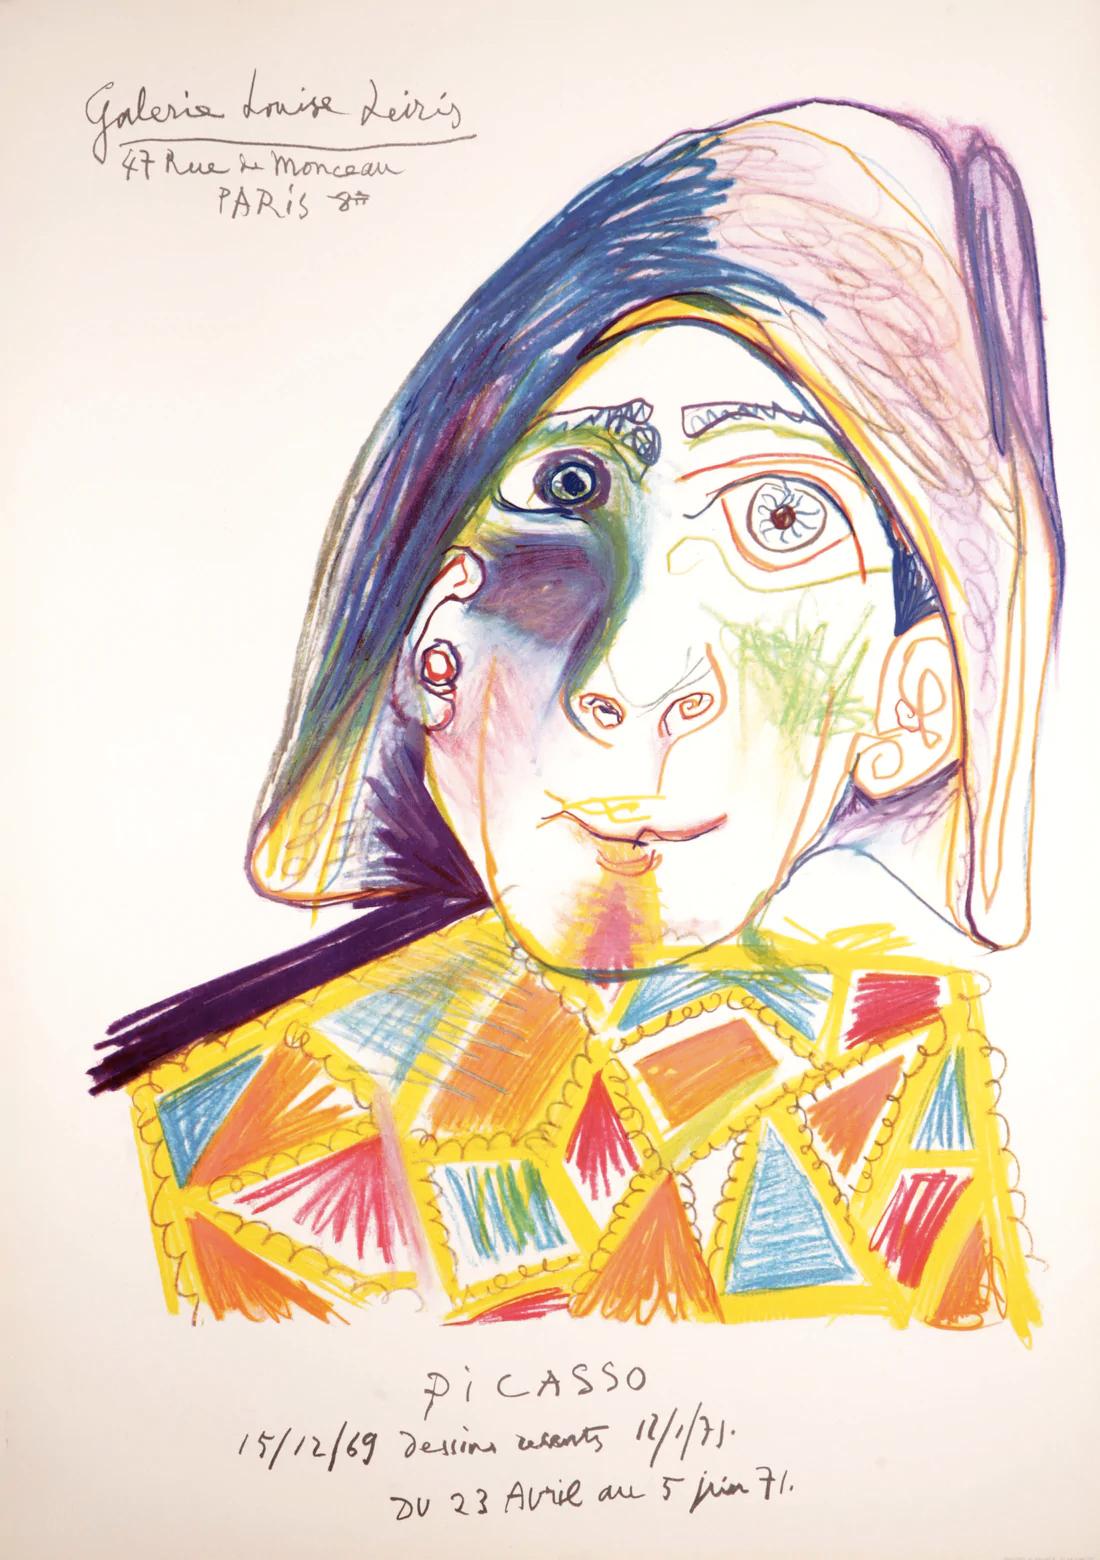 Artiste : Pablo Picasso

Moyen : Affiche lithographique, édition de 2000, 1971

Dimensions : 30 x 19.75 in, 76.2 x 50.2 cm

Papier Arches (avec filigrane Mourlot) - Excellent état A

Cette affiche a été créée pour une exposition à la Galerie Louise